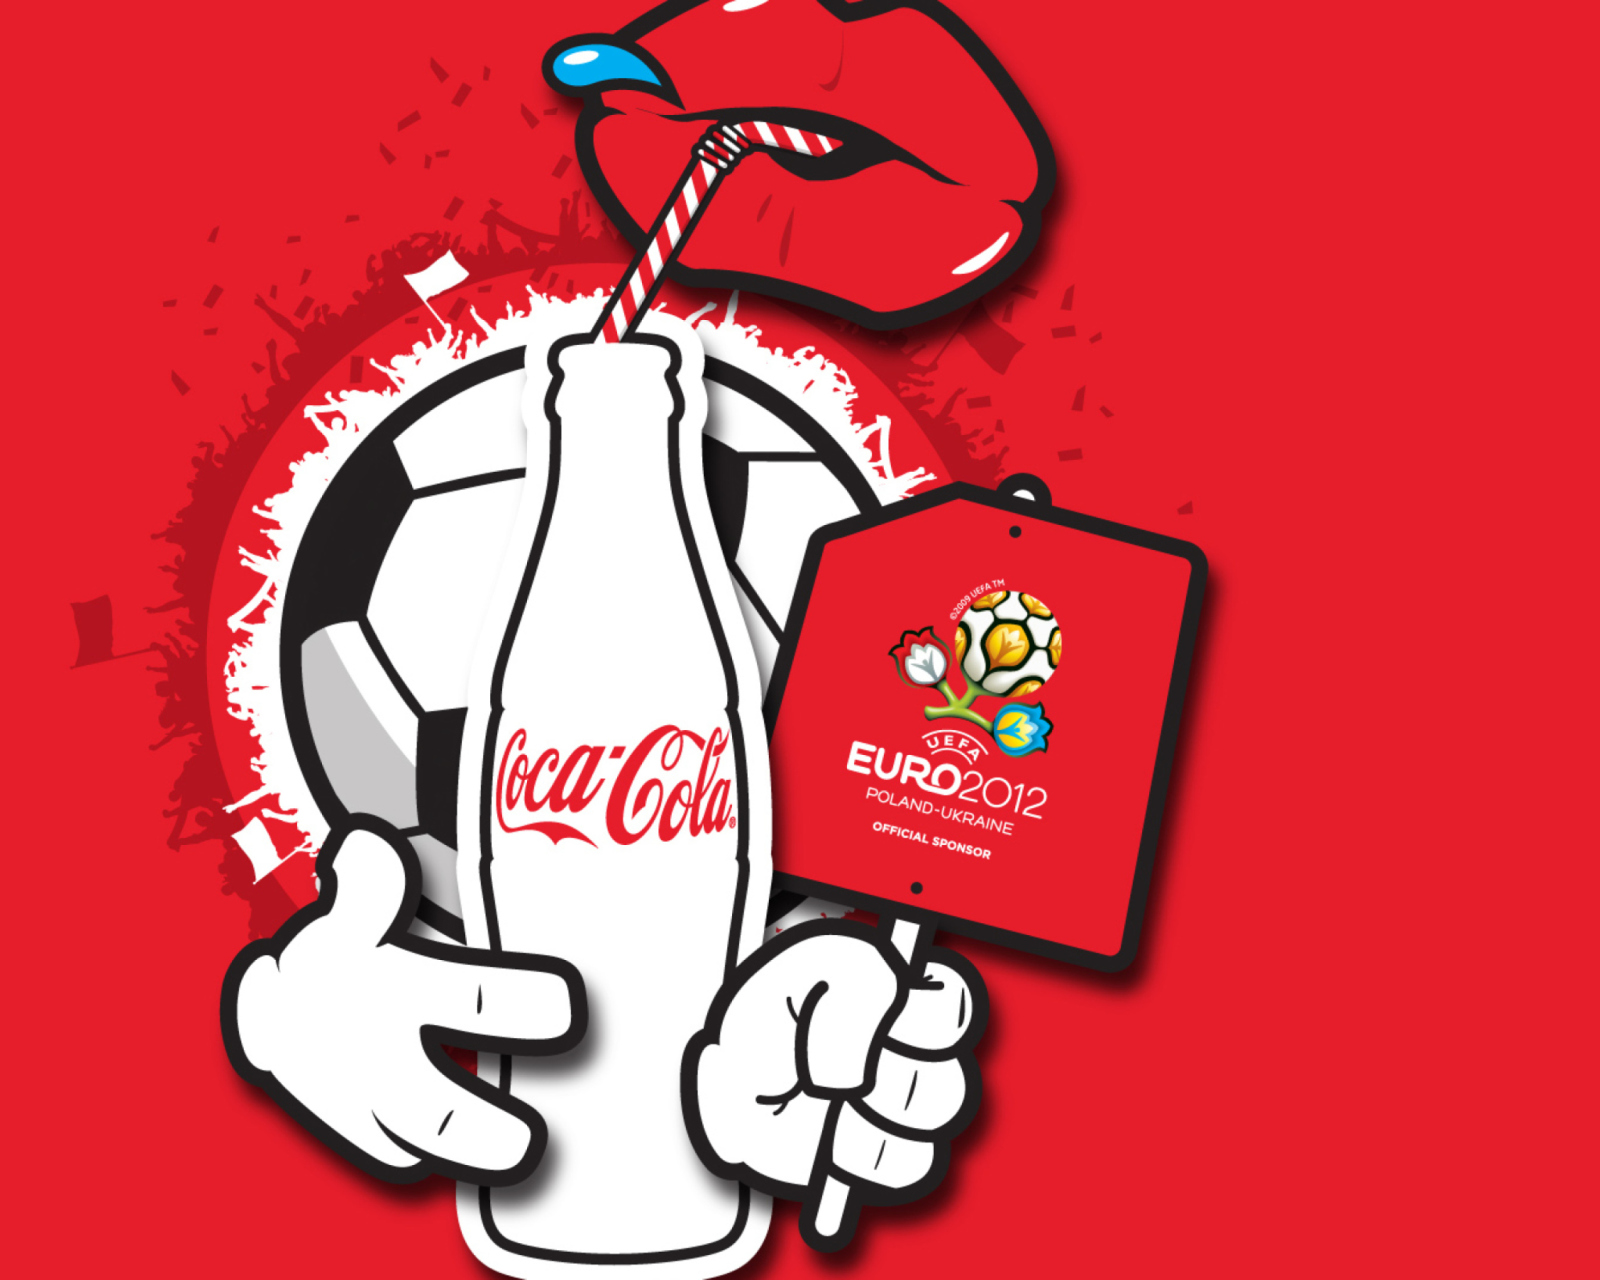 Fondo de pantalla Coca Cola & Euro 2012 full hd 1600x1280